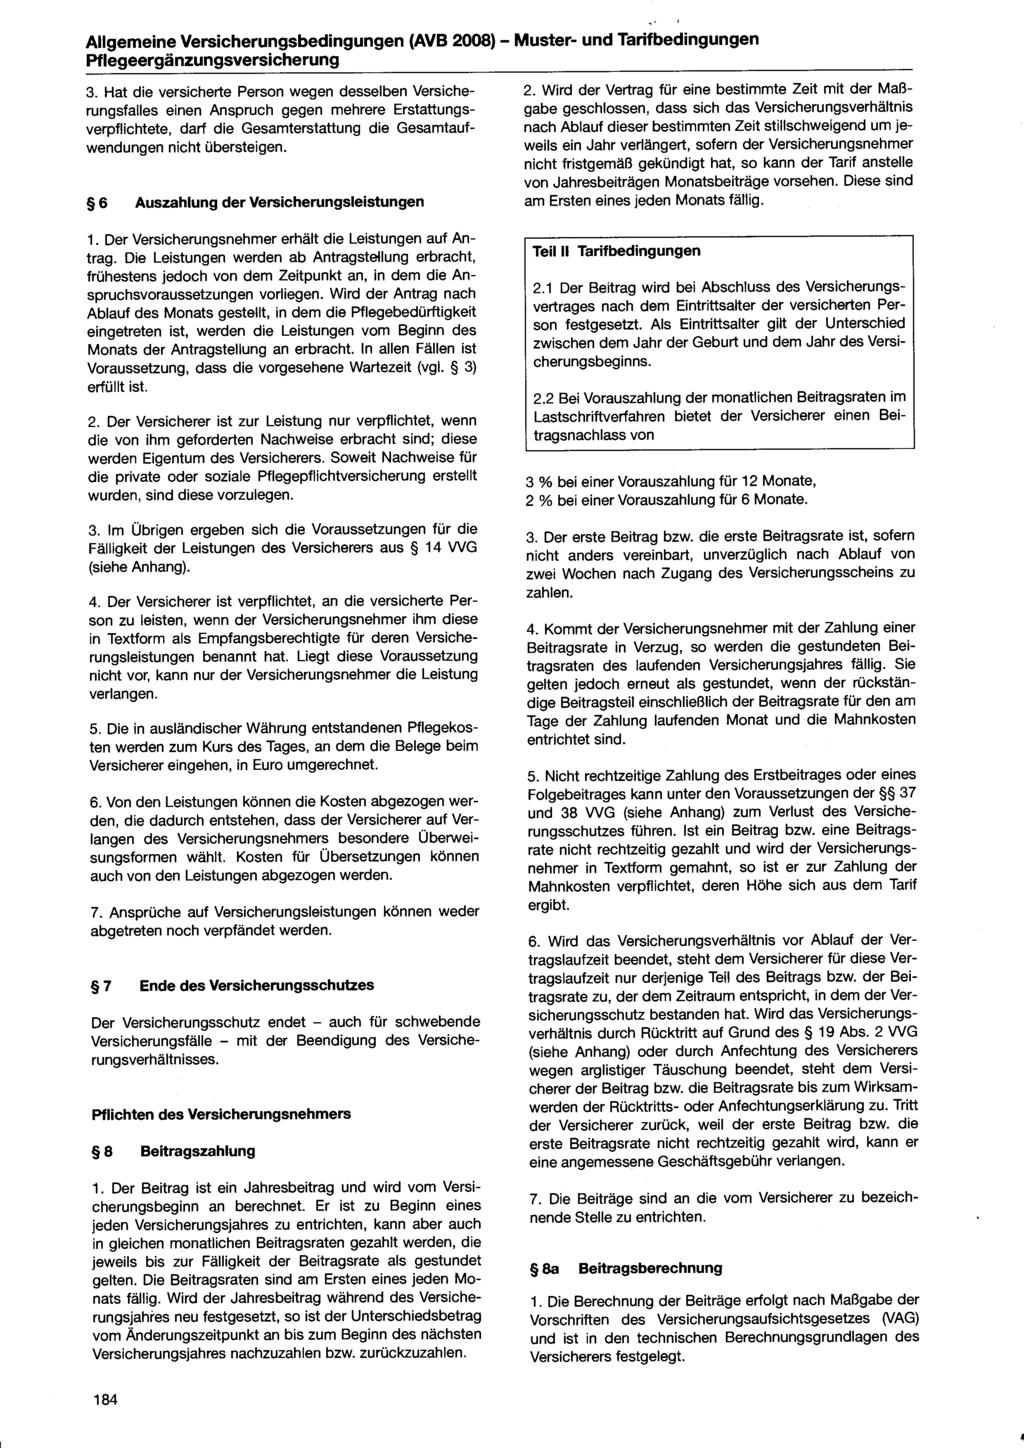 Allgemeine Versicherungsbedingungen (AVB 2008) - Muster- und Tarifbedingungen Pflegeergänzungsversicherung 3.